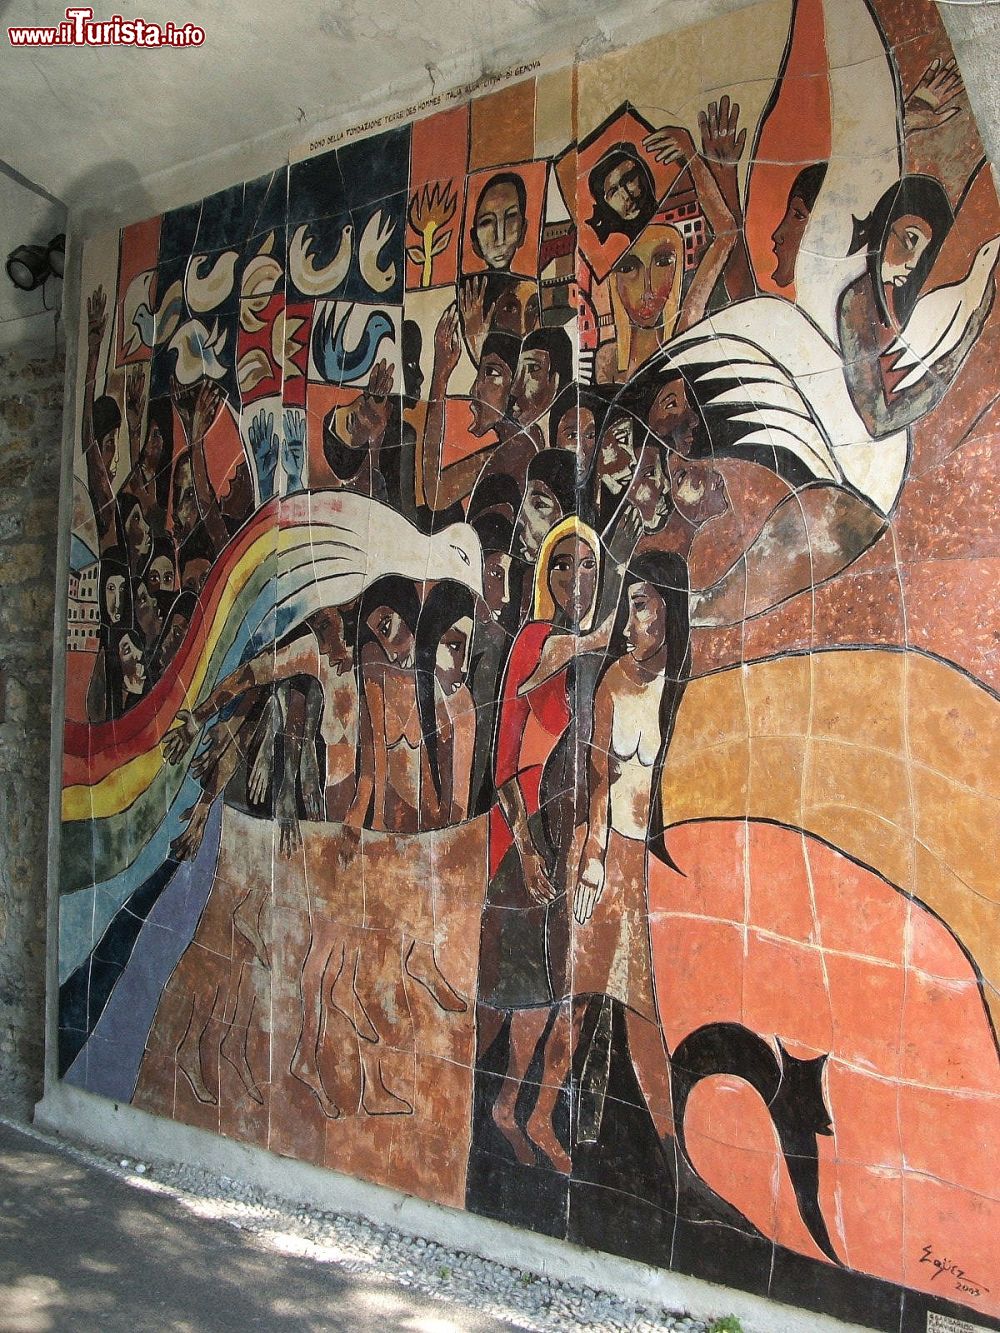 Immagine Il murales ospitato nel parco del castello d'Albertis a Genova, Liguria. Rappresenta la difesa dei diritti umani ed è il primo realizzato in Europa con questa tematica.